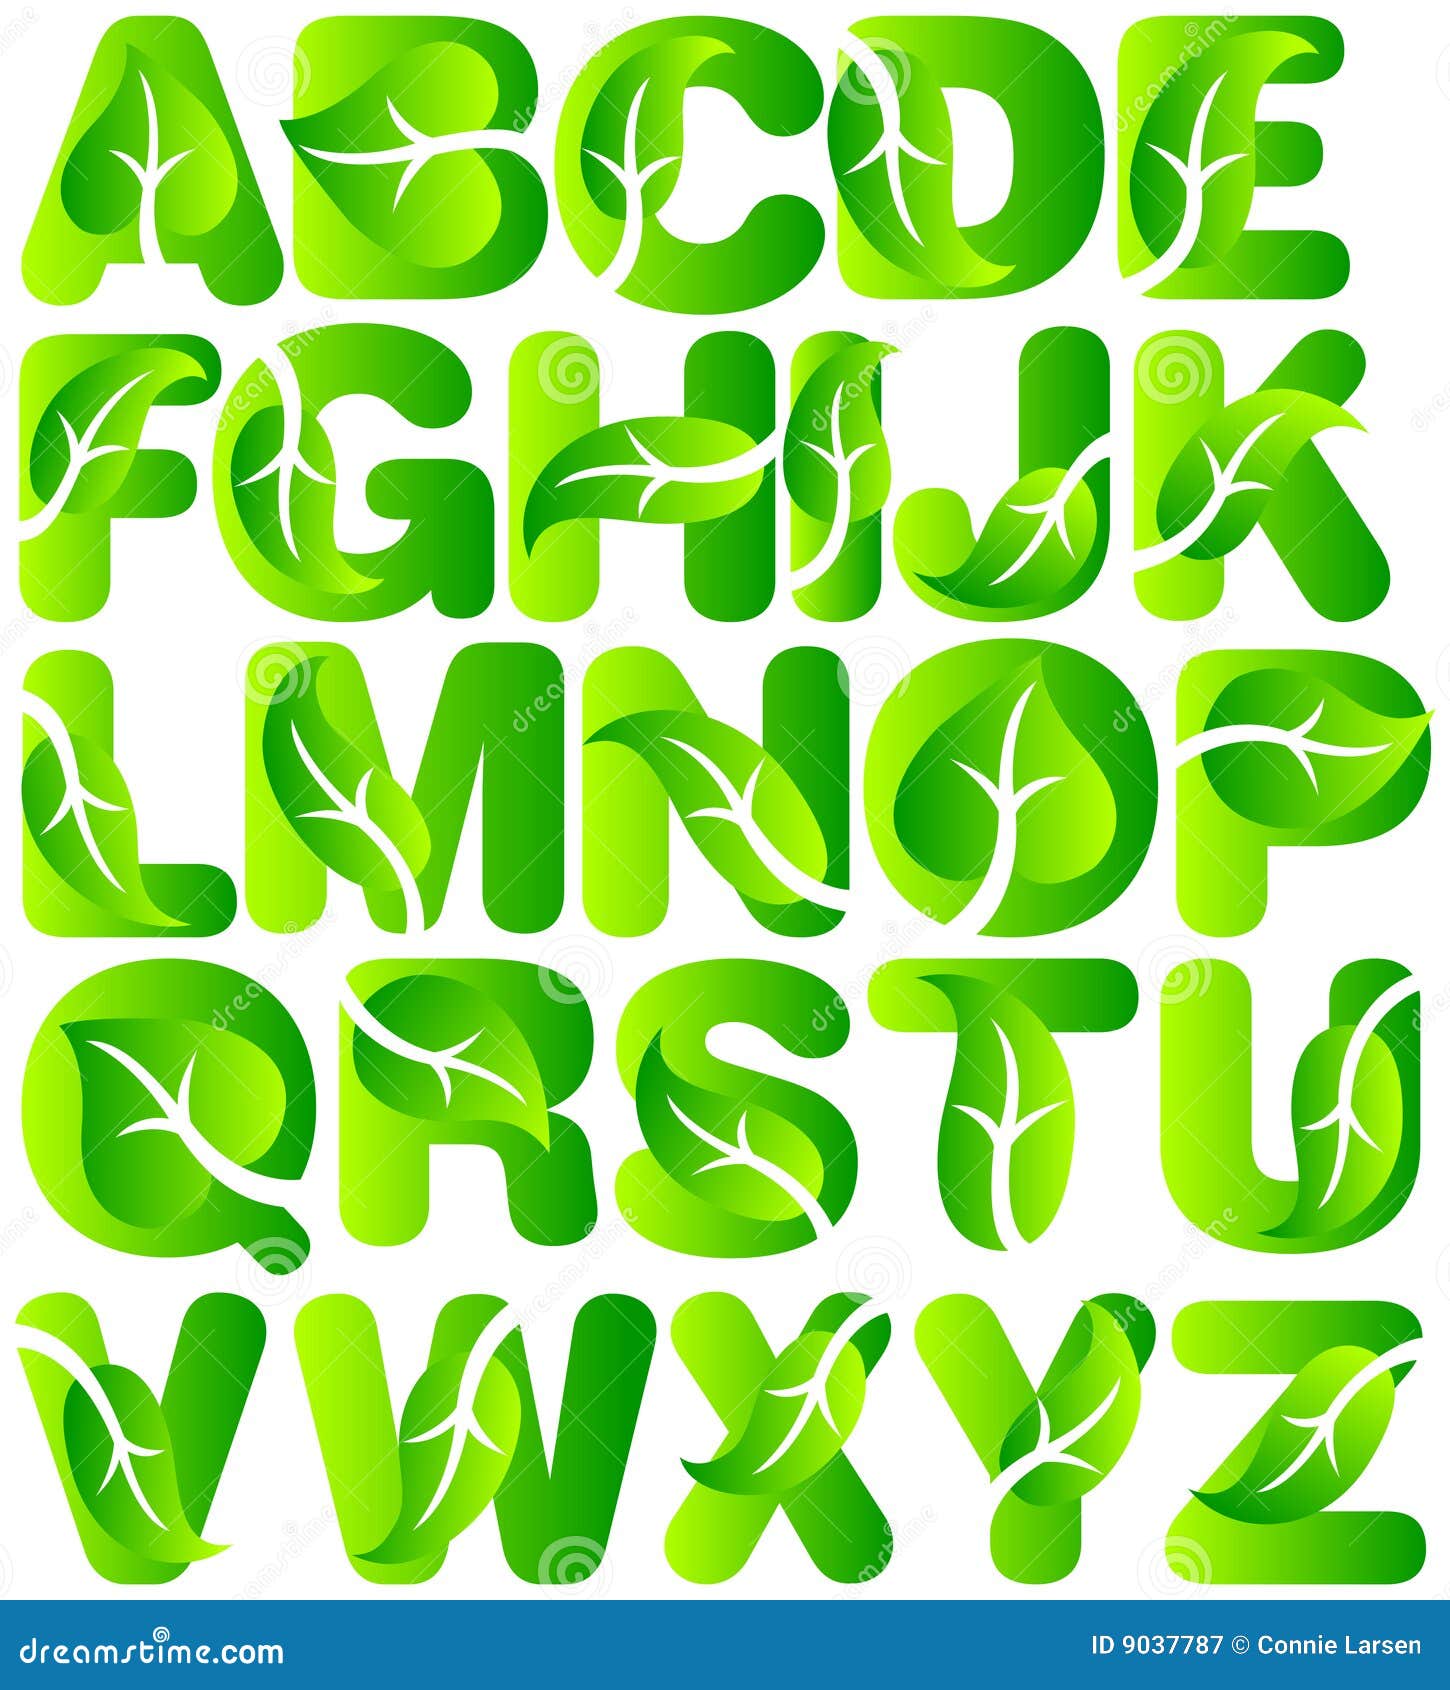 Шрифт на зеленом фоне. Шрифты. Растительный шрифт. Алфавит в зеленом цвете. Алфавит в стиле природы.